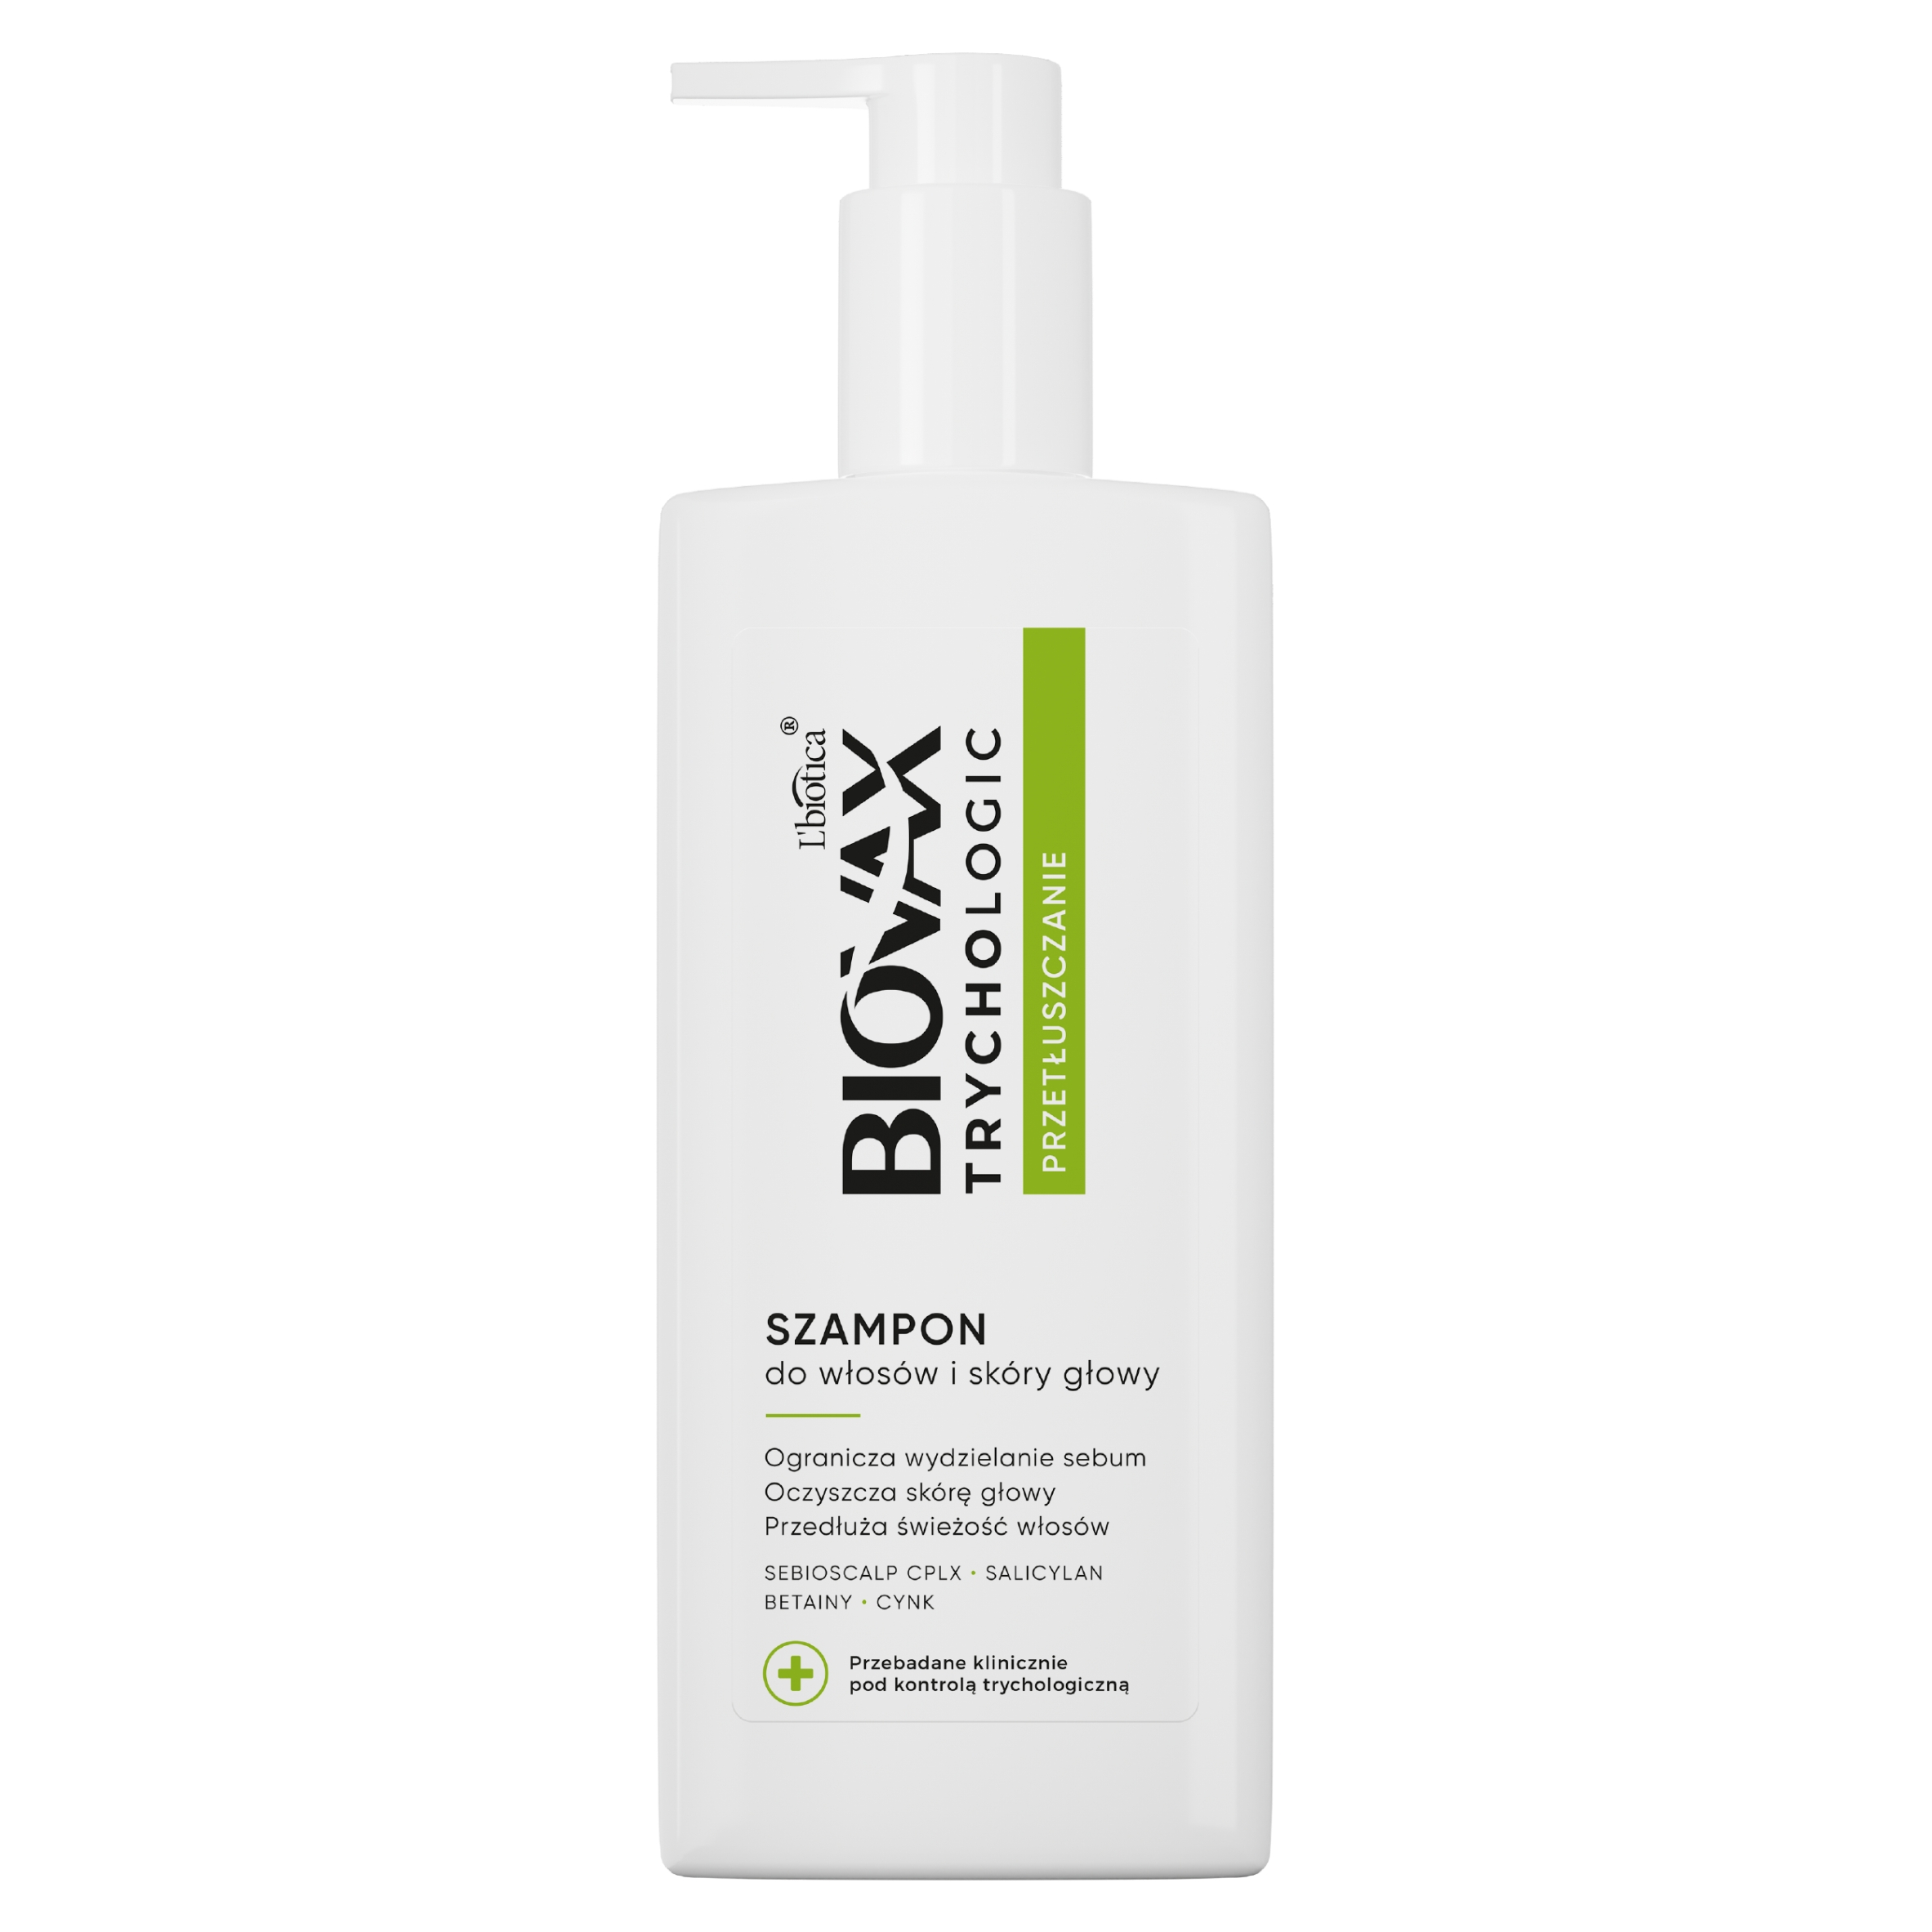 lbiotica biovax szampon do włosów przetłuszczających 200 ml